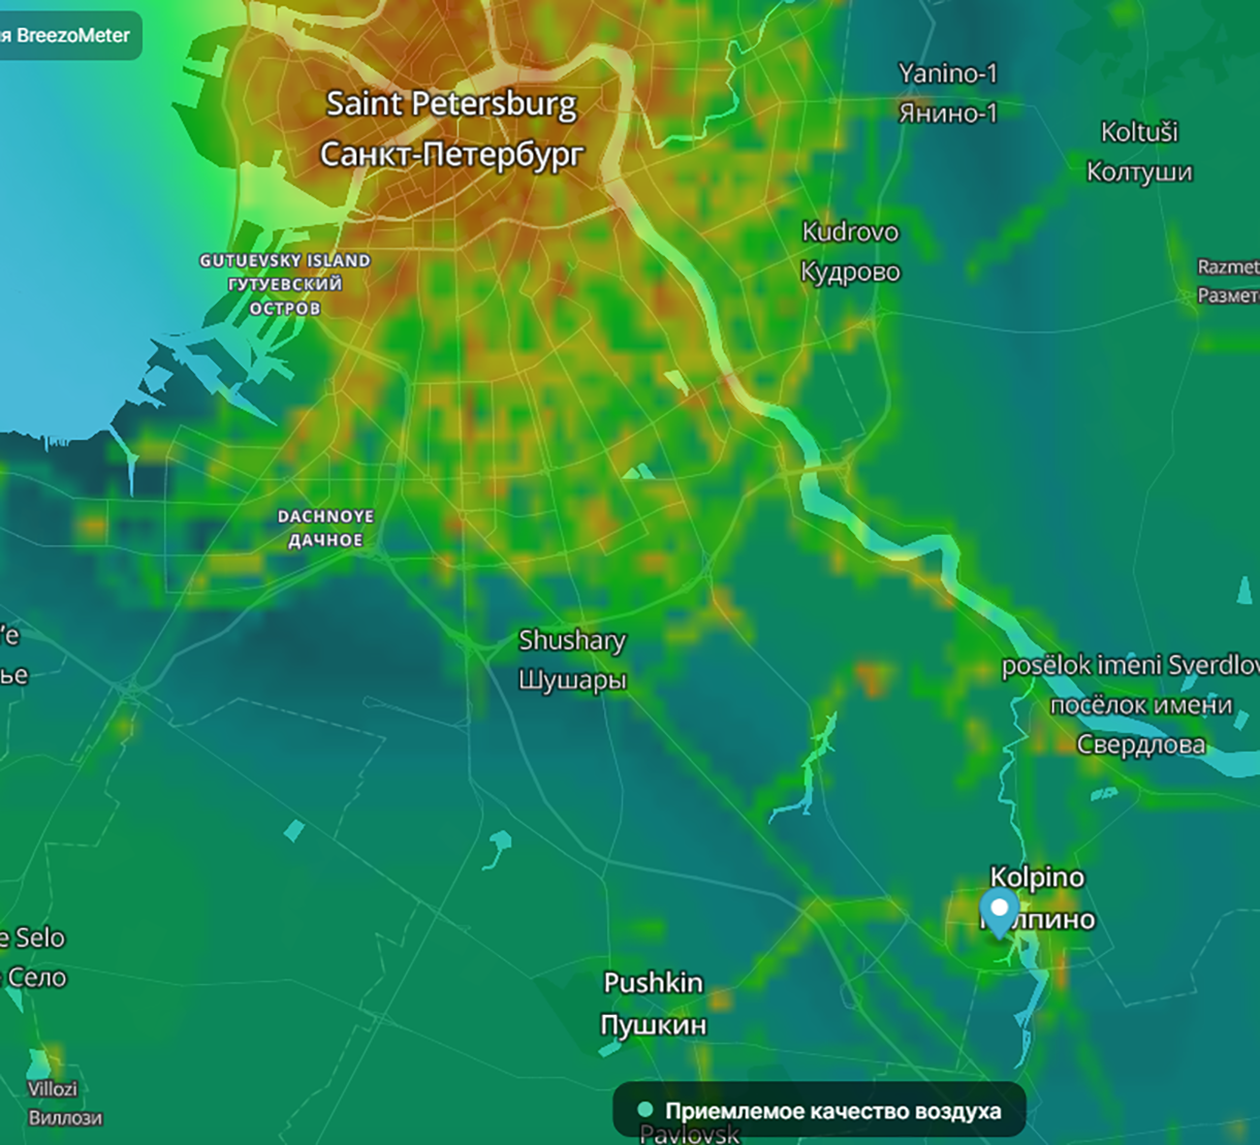 Качество воздуха в Колпине обычно характеризуется как хорошее и приемлемое — темно- и светло-зеленые цвета на карте. В центральной части Санкт⁠-⁠Петербурга воздух хуже из⁠-⁠за перегруженности транспортом. Источник: breezometer.com